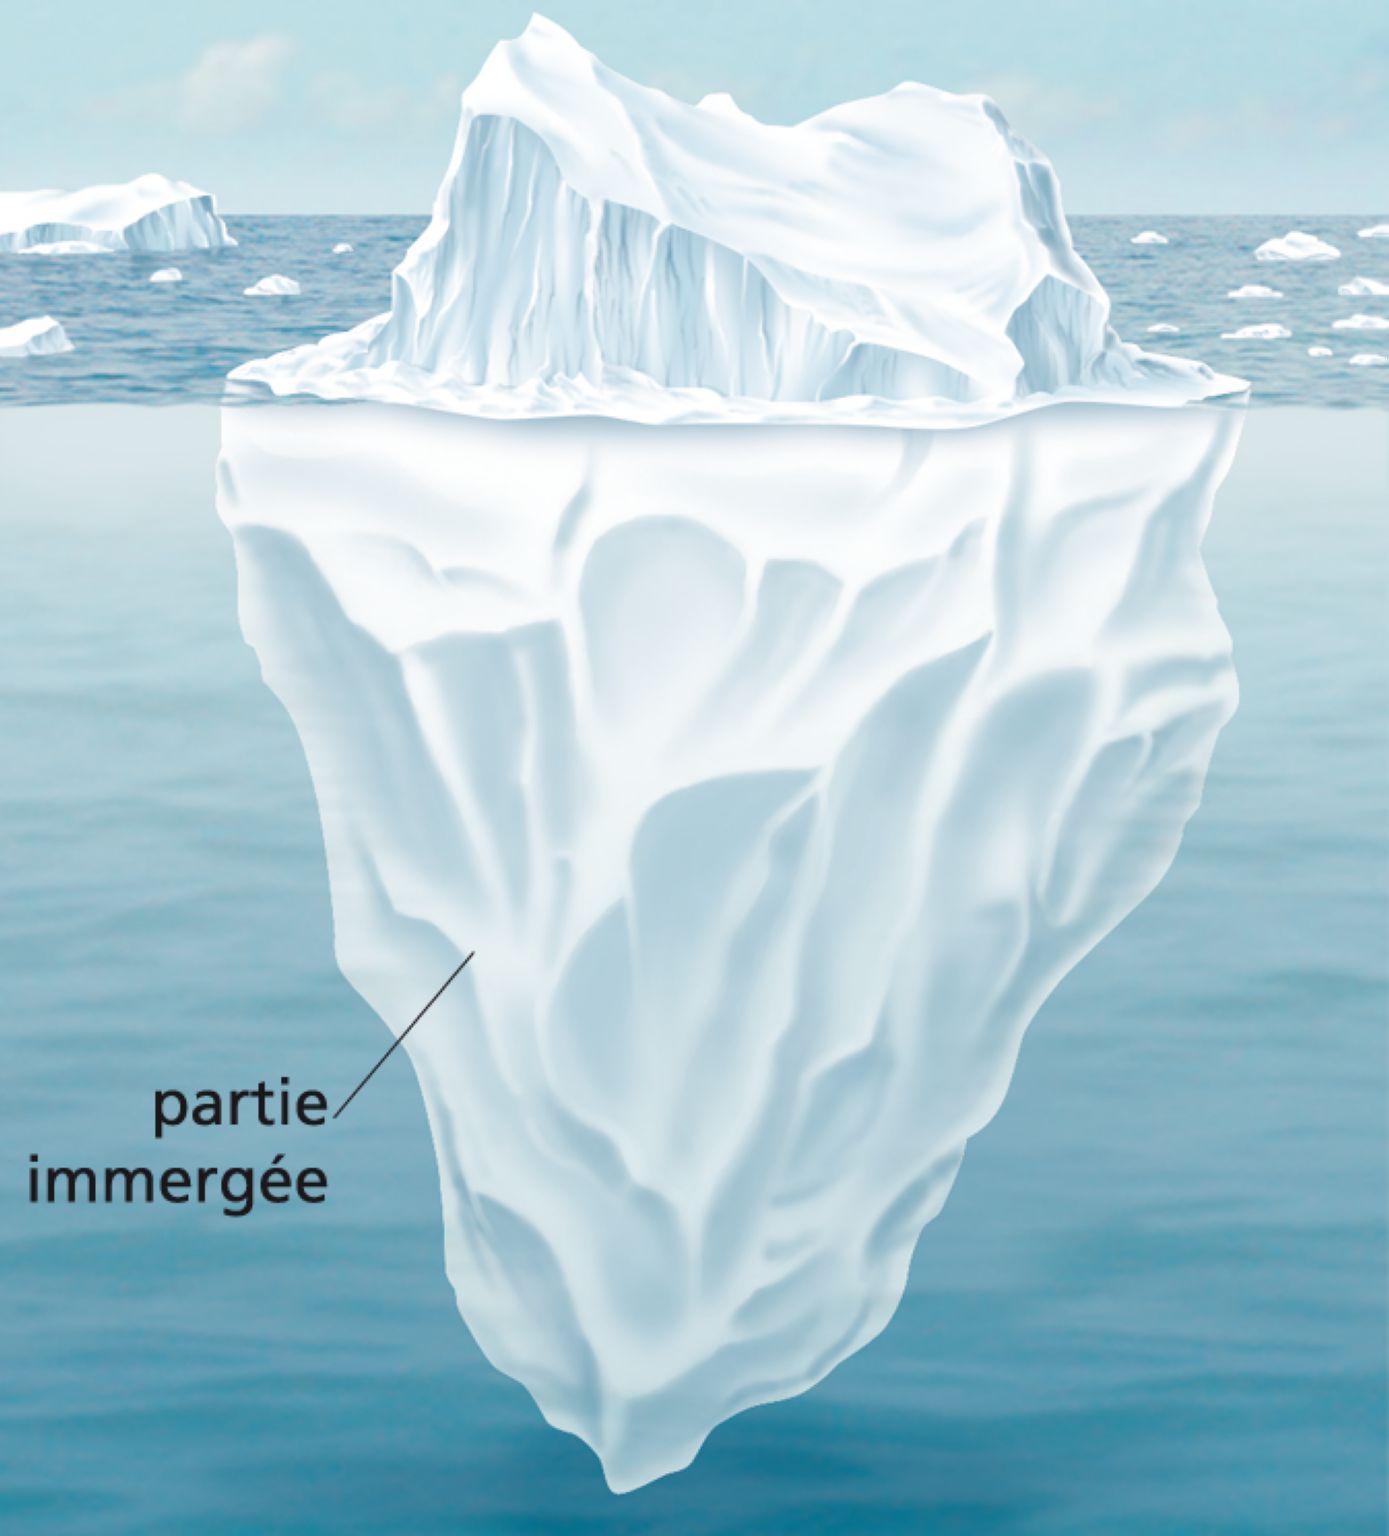 la partie immergée d’un iceberg